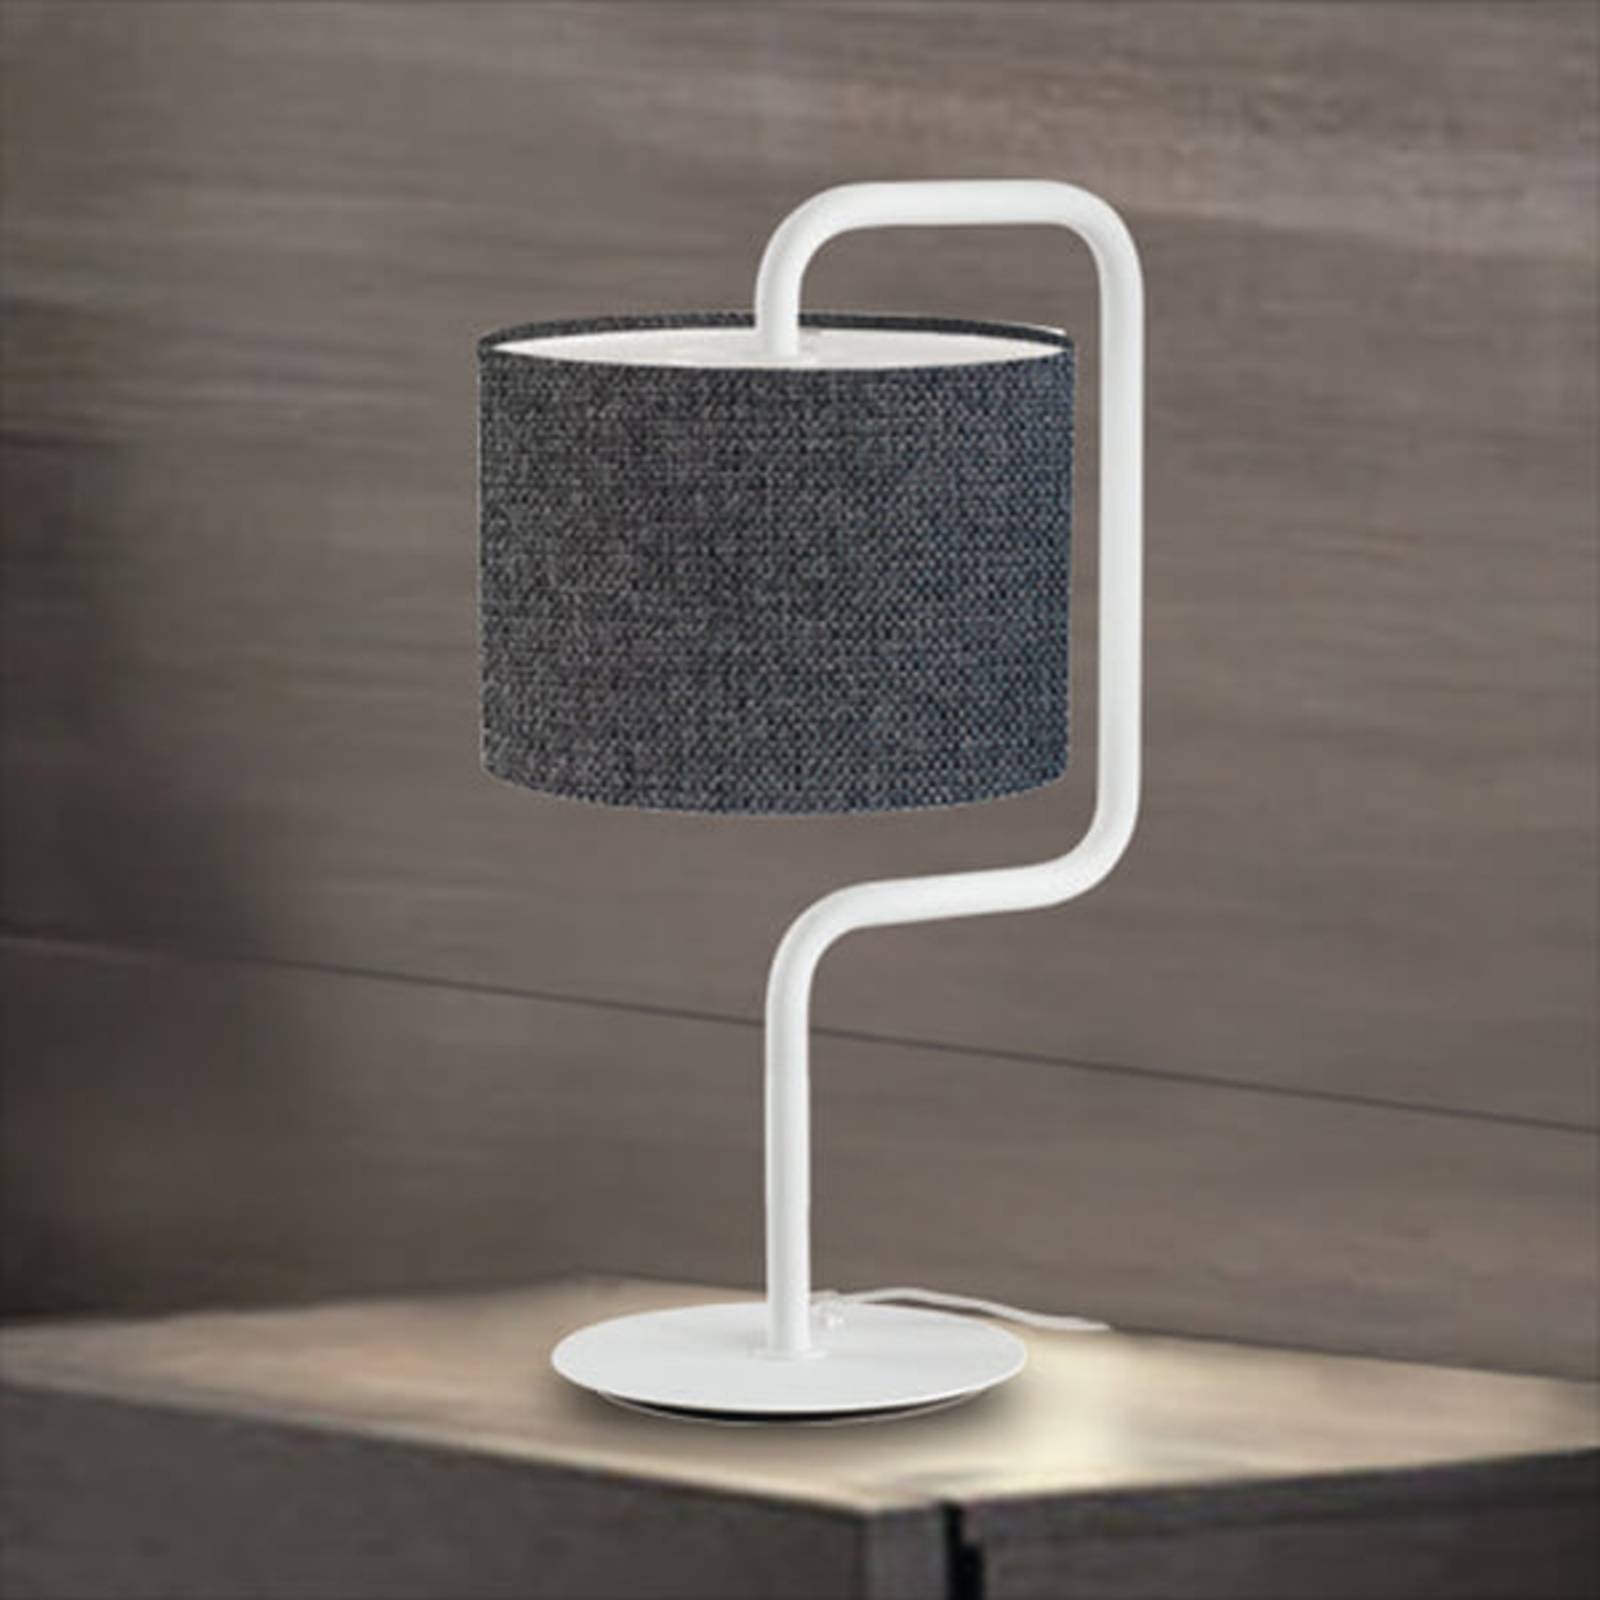 Artempo Italia Morfeo - Látková stolní lampa v antracitové barvě